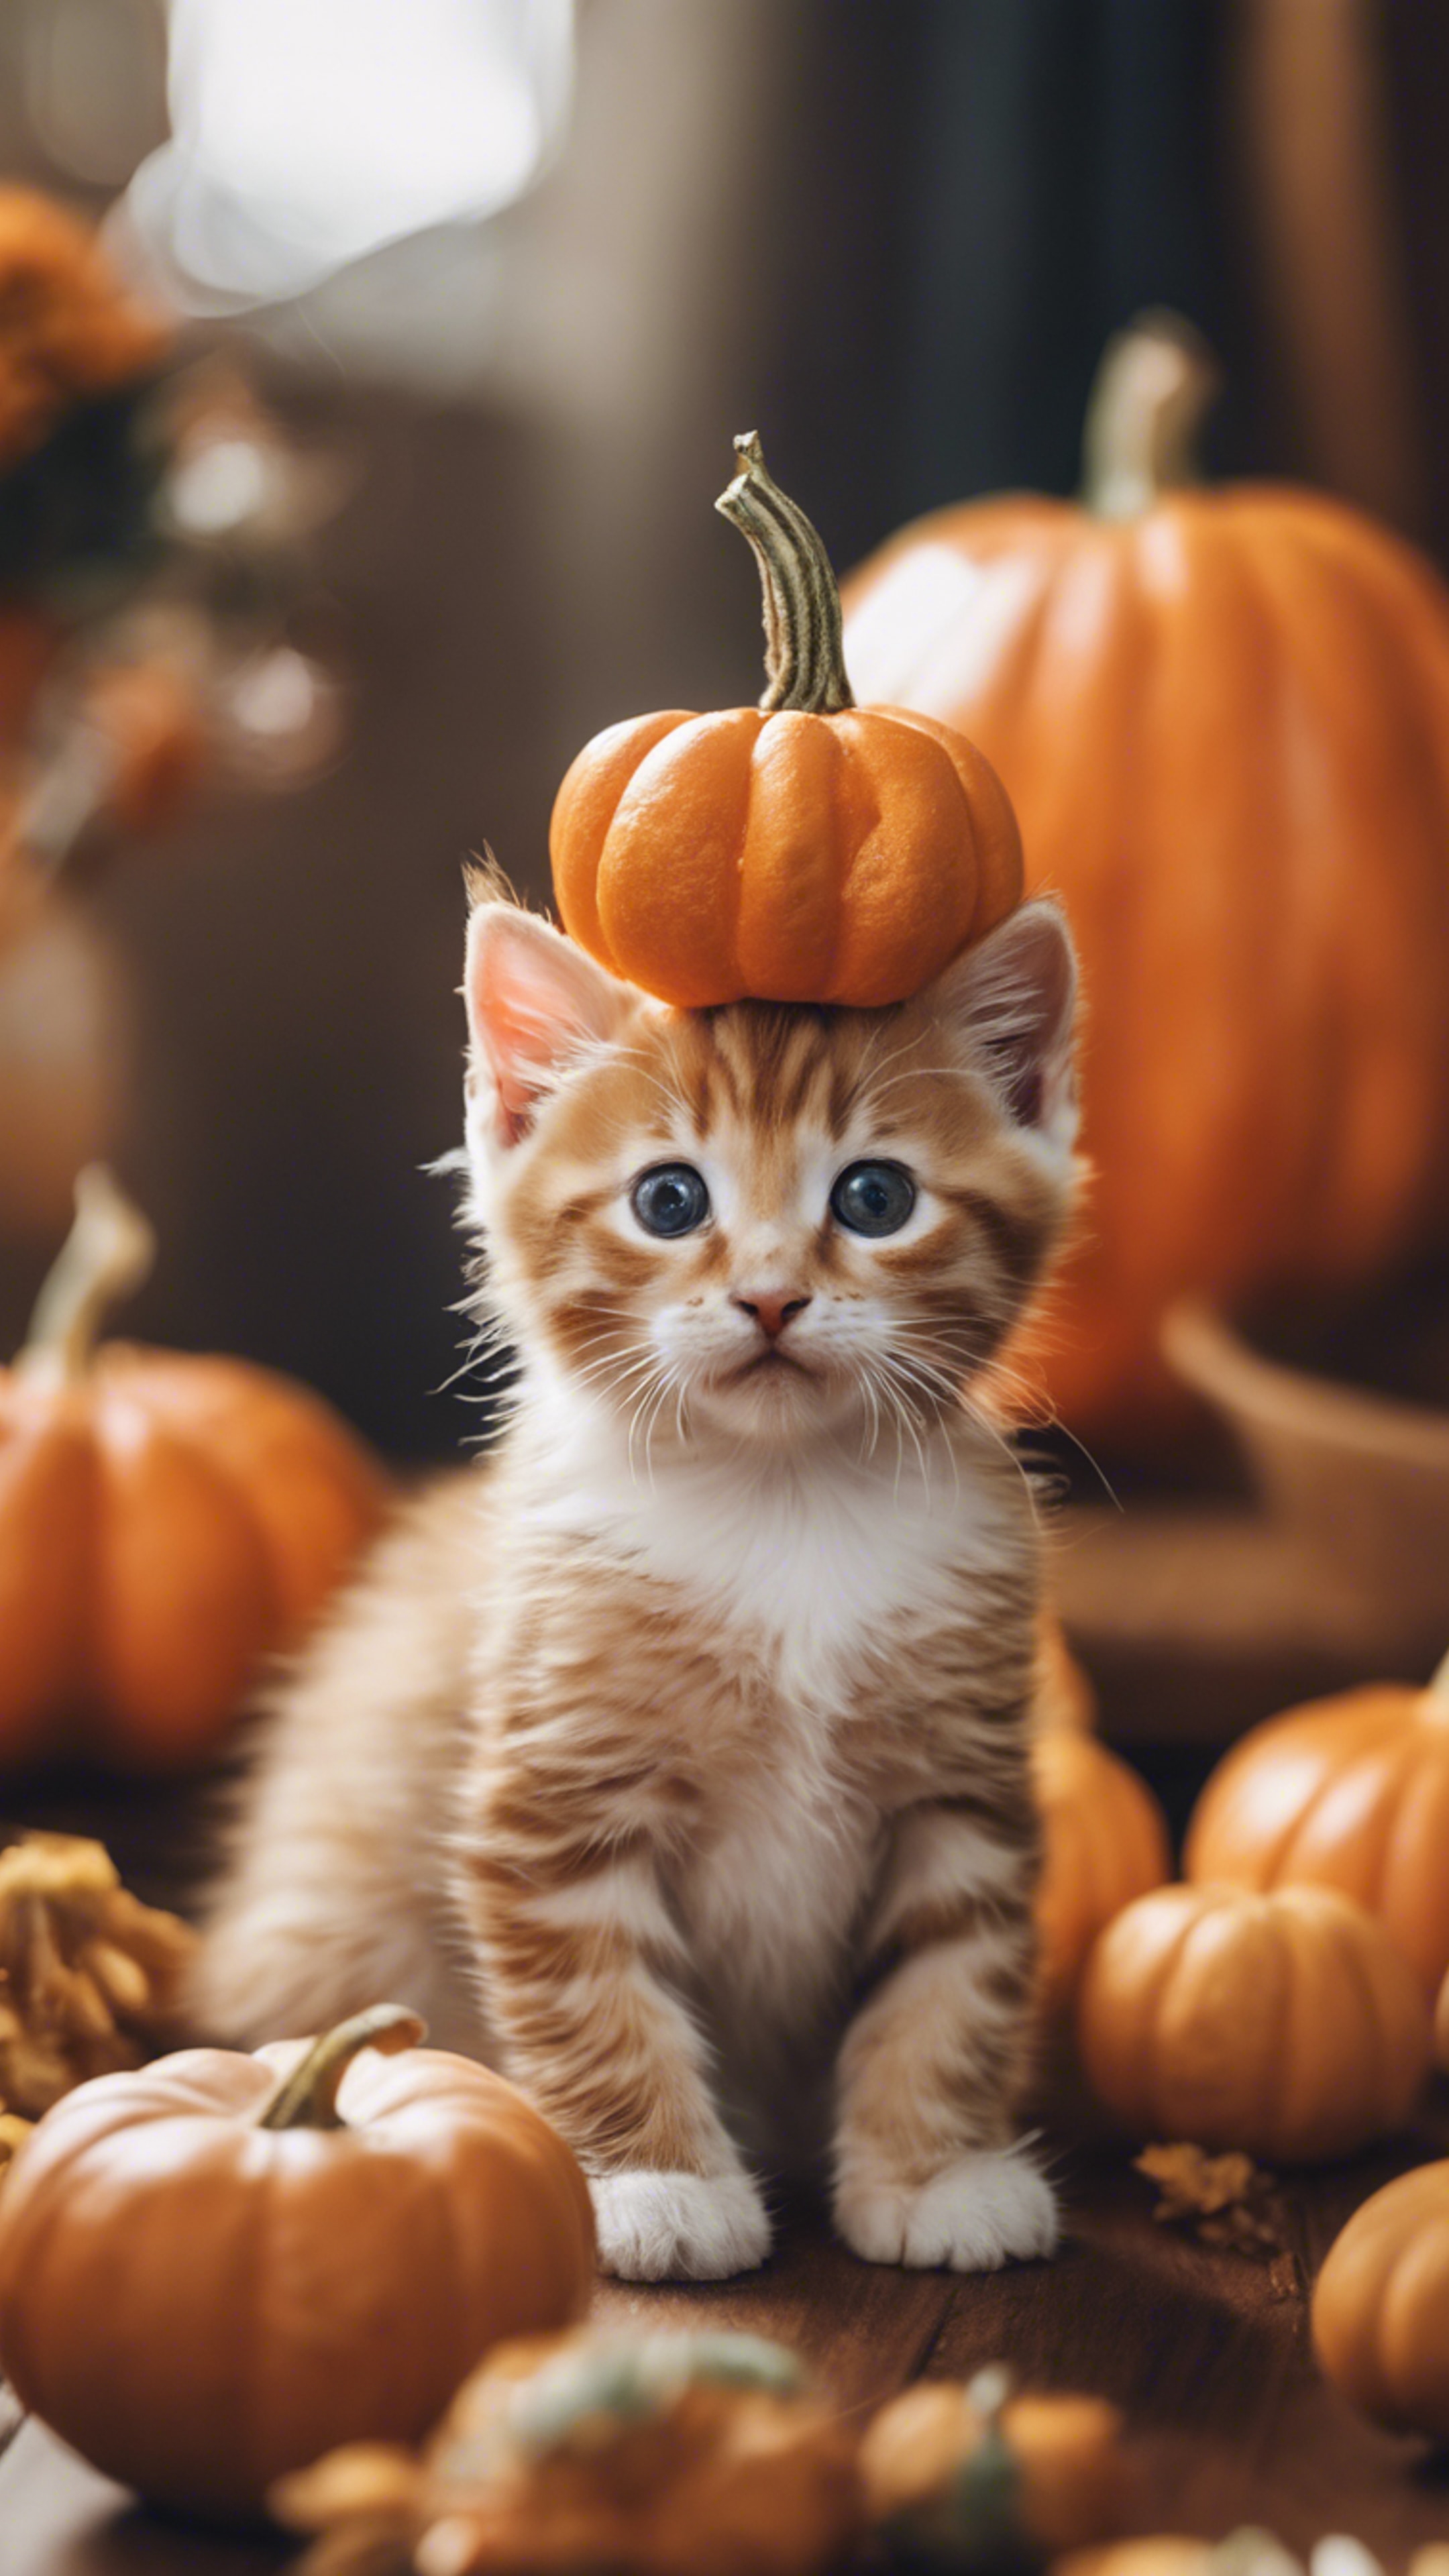 An orange tabby kitten dressed up as a tiny pumpkin for Halloween festivities. Валлпапер[a5205dadd28d41bcbdef]